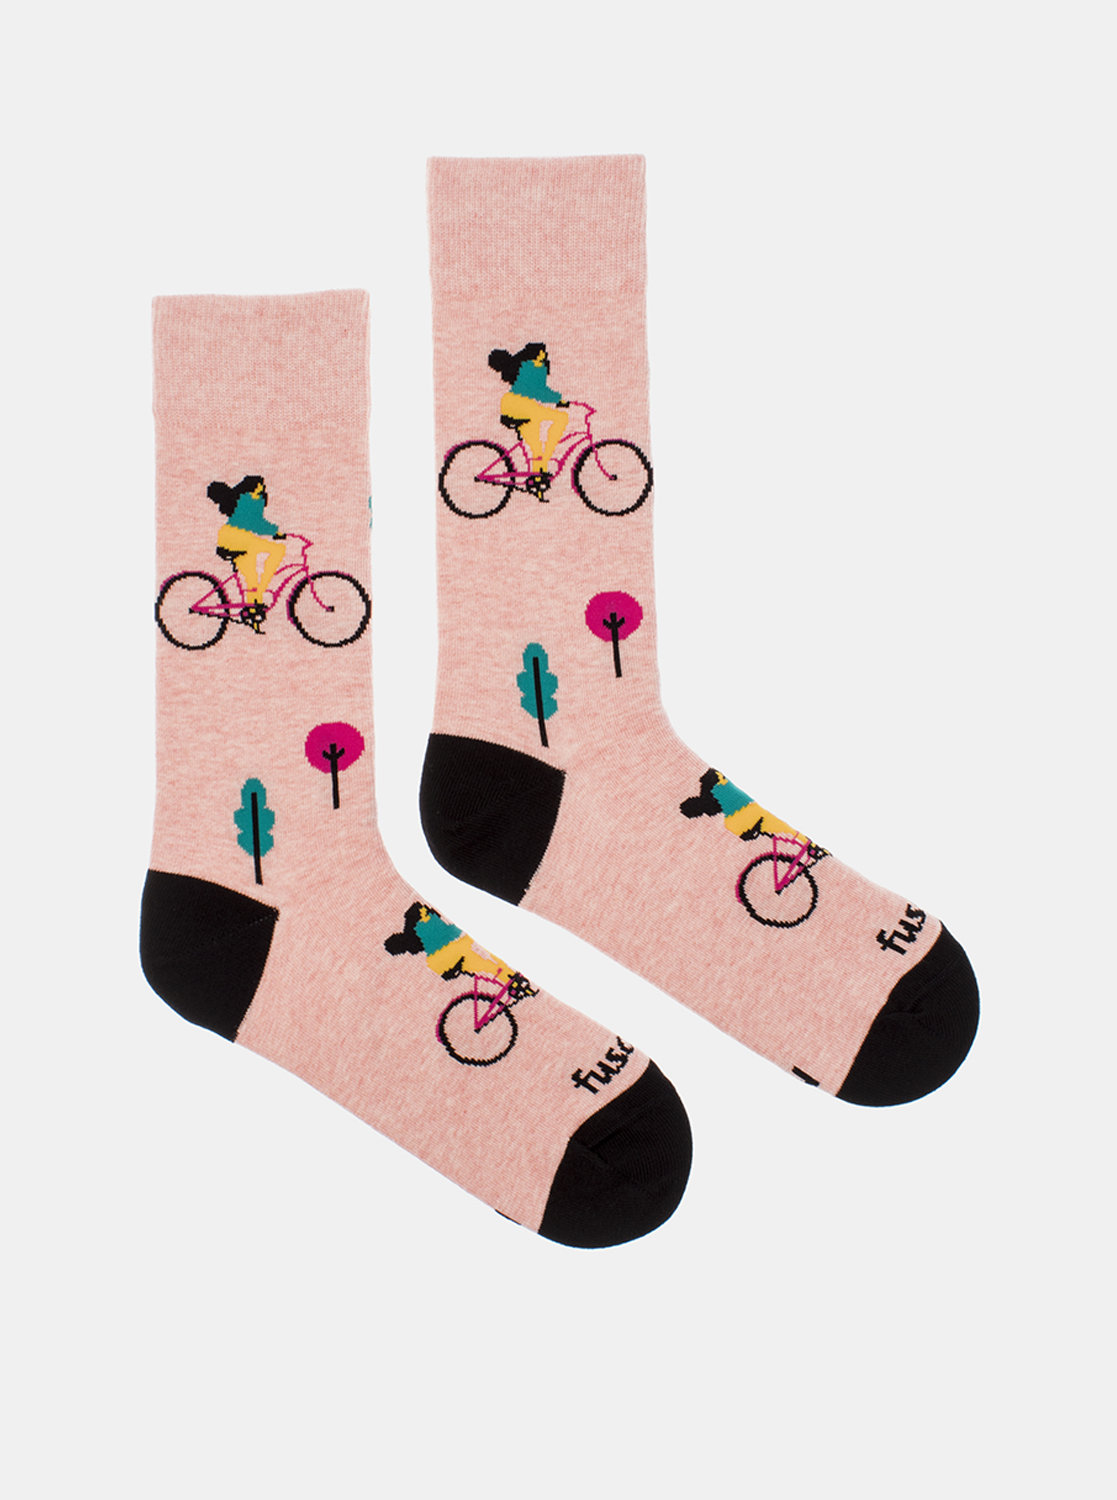 Fotografie Růžové vzorované ponožky Fusakle Cyklistka ve městě